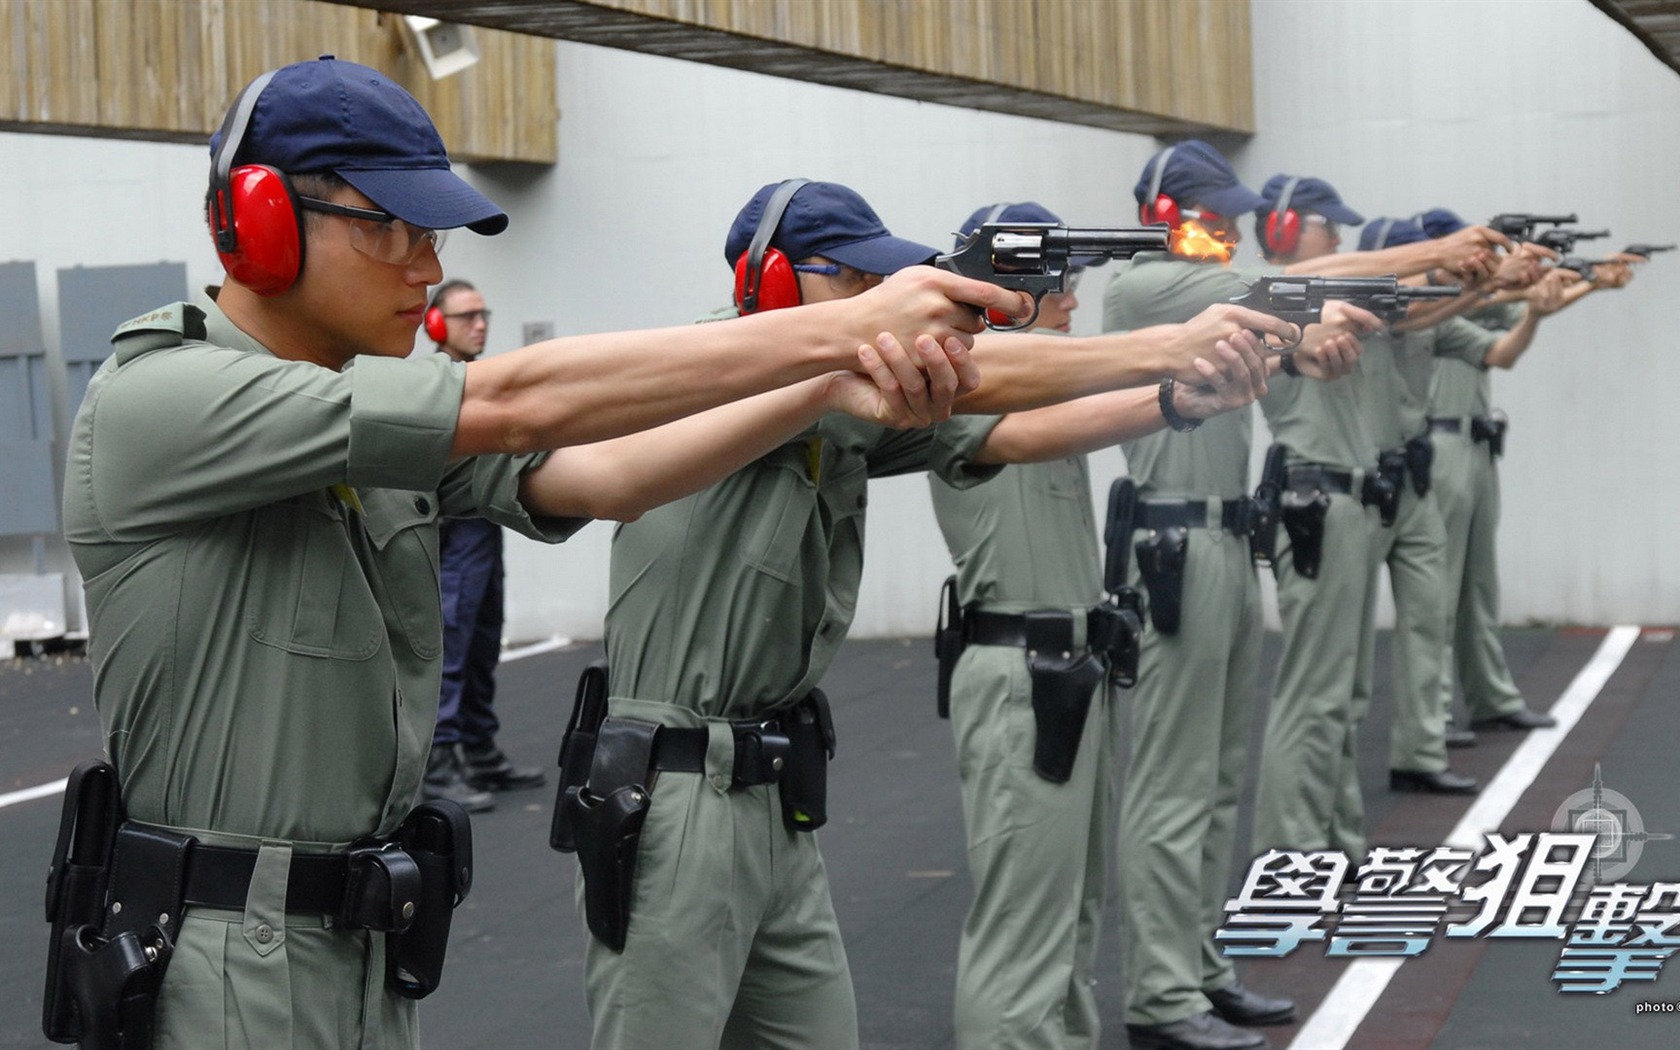 Beliebte TVB Schauspielschule Police Sniper #5 - 1680x1050